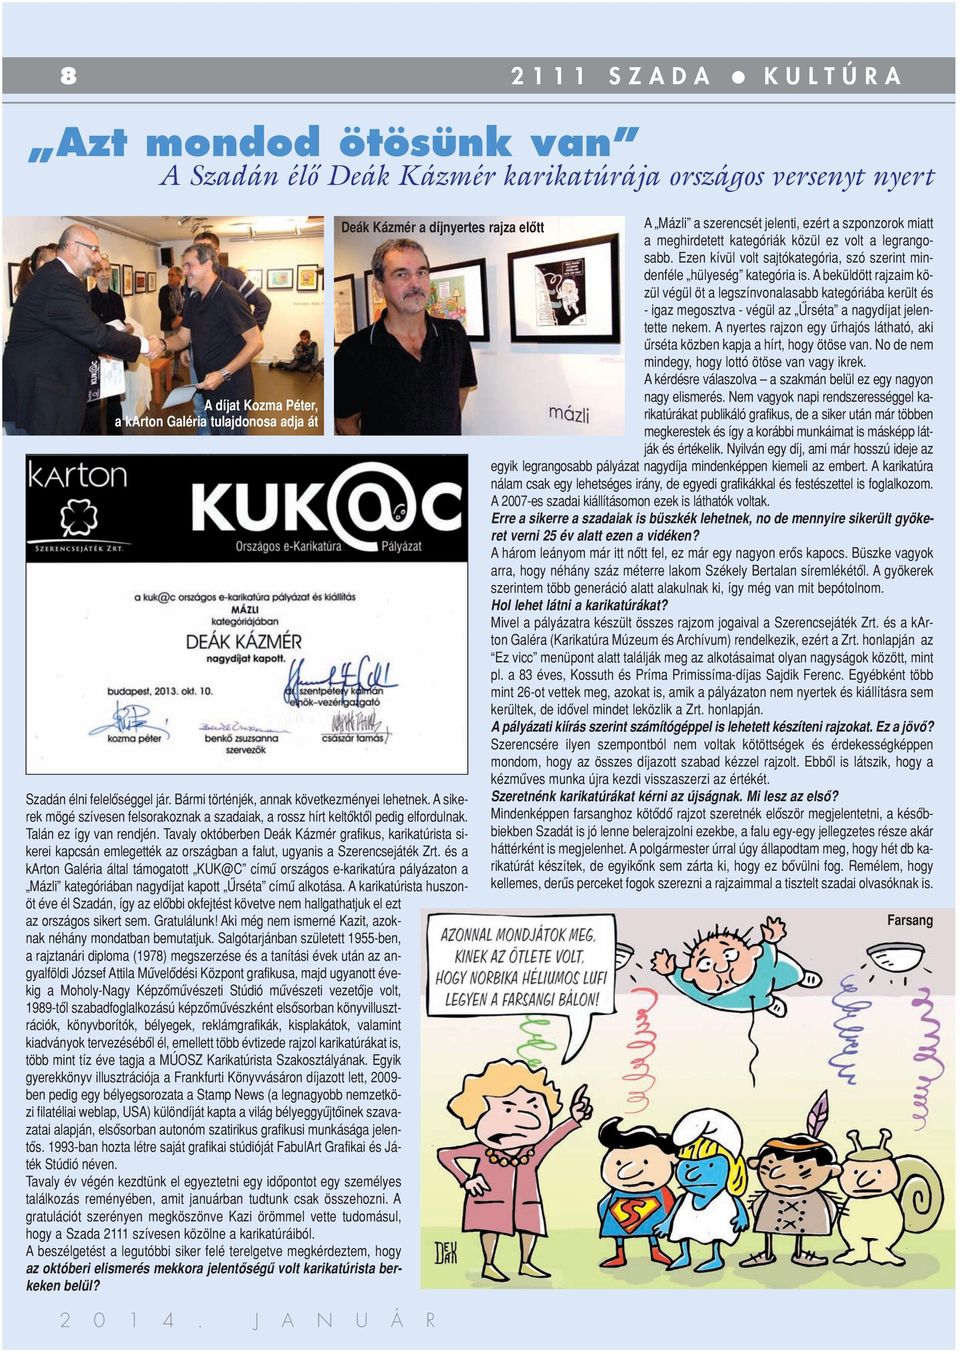 Tavaly októberben Deák Kázmér grafikus, karikatúrista sikerei kapcsán emlegették az országban a falut, ugyanis a Szerencsejáték Zrt.